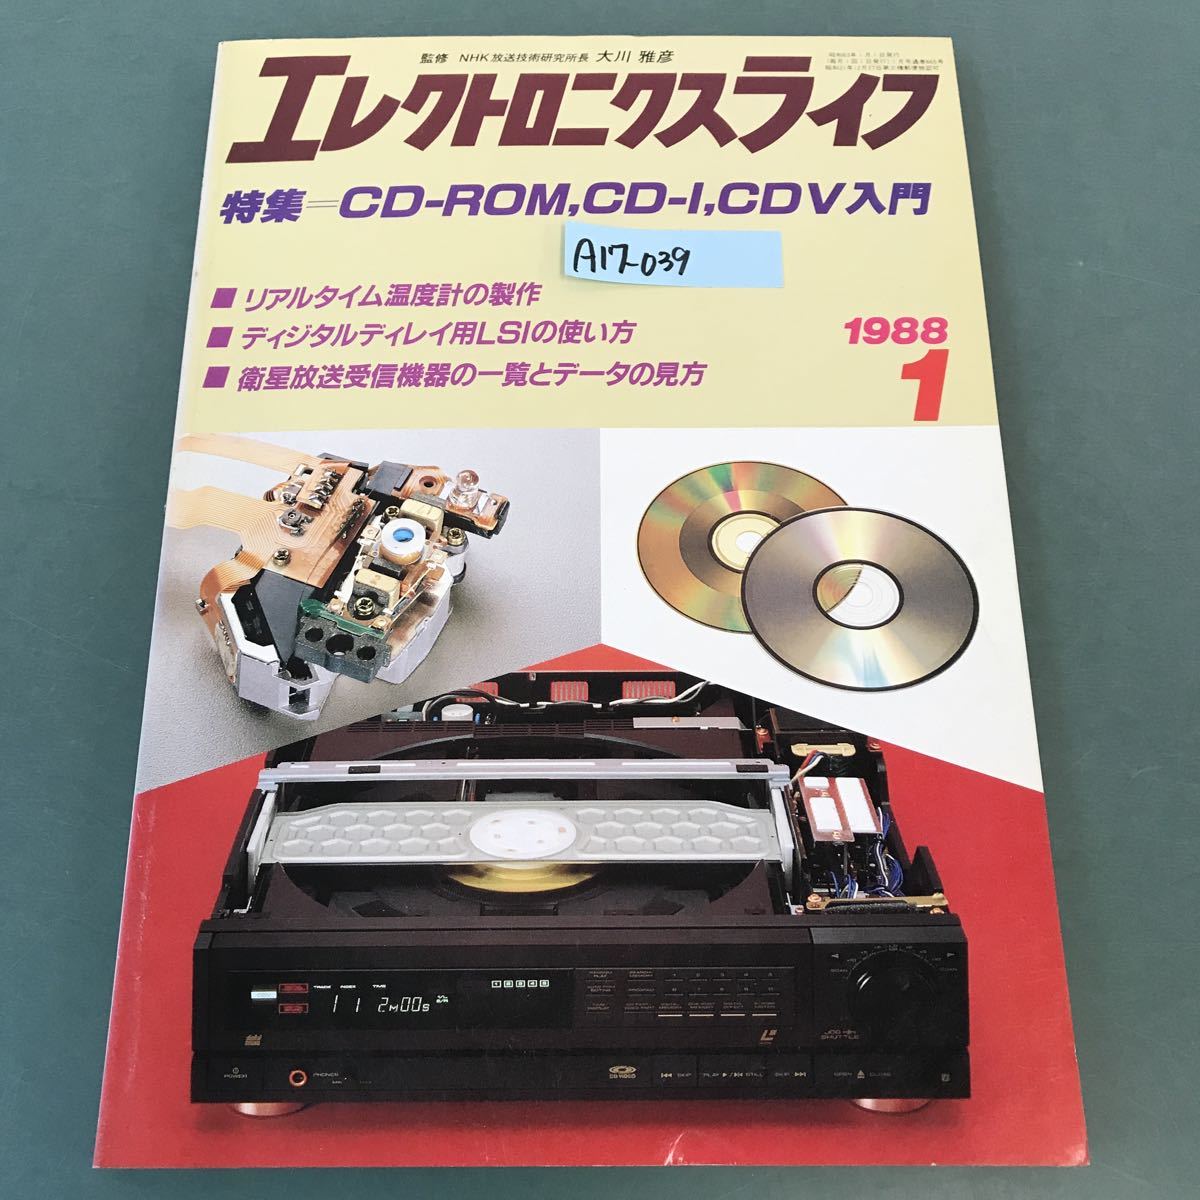 A17-039エレクトロニクスライフ 特集 CD-ROM,CD-I,CDV入門 1988年 1月号_画像1